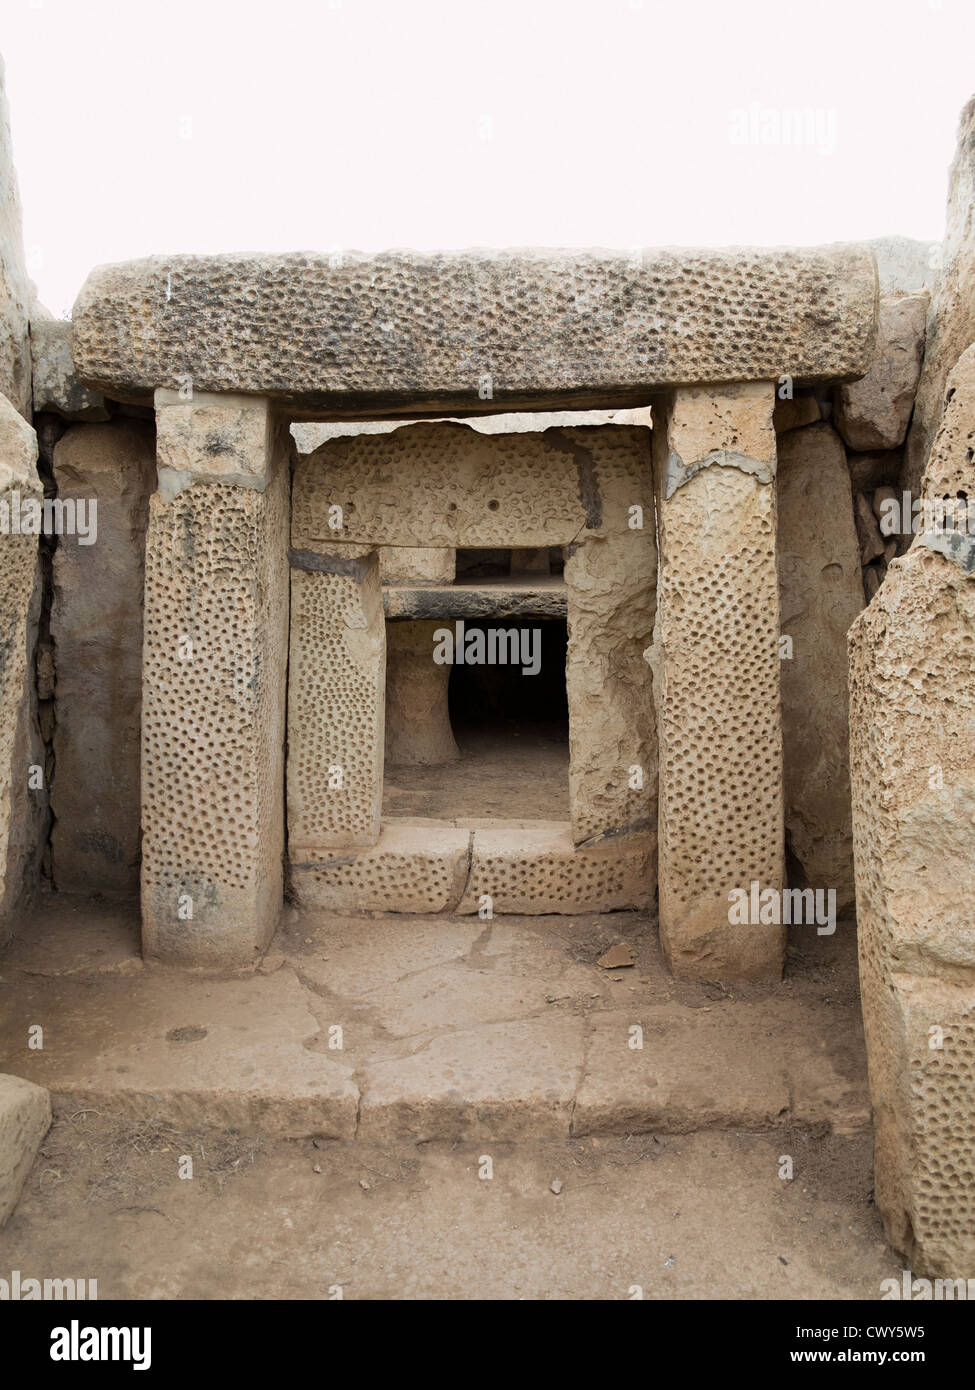 Ingresso mostra decorate snocciolate muratura in pietra a Mnajdra templi vicino a Hagar Qim, Qrendi, isola di Malta Foto Stock